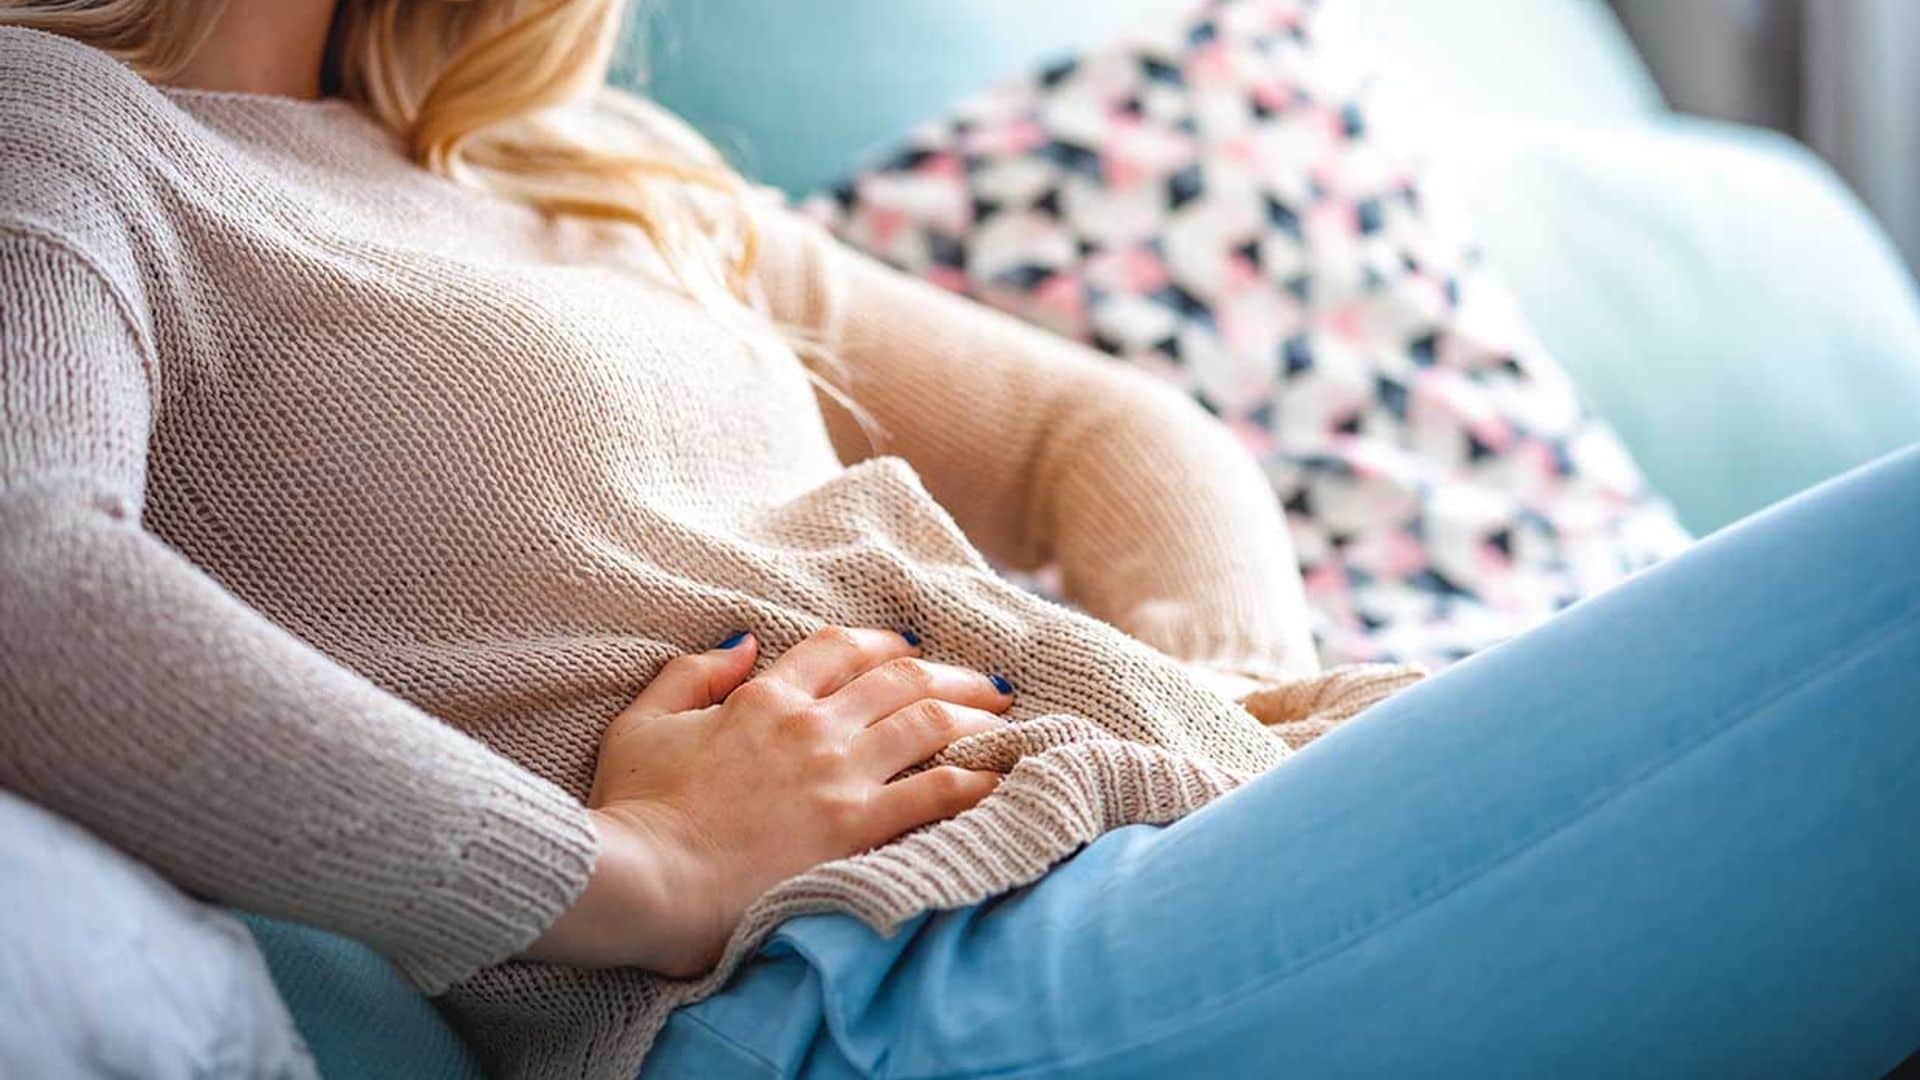 Estos ejercicios te ayudarán a aliviar los dolores del síndrome premenstrual